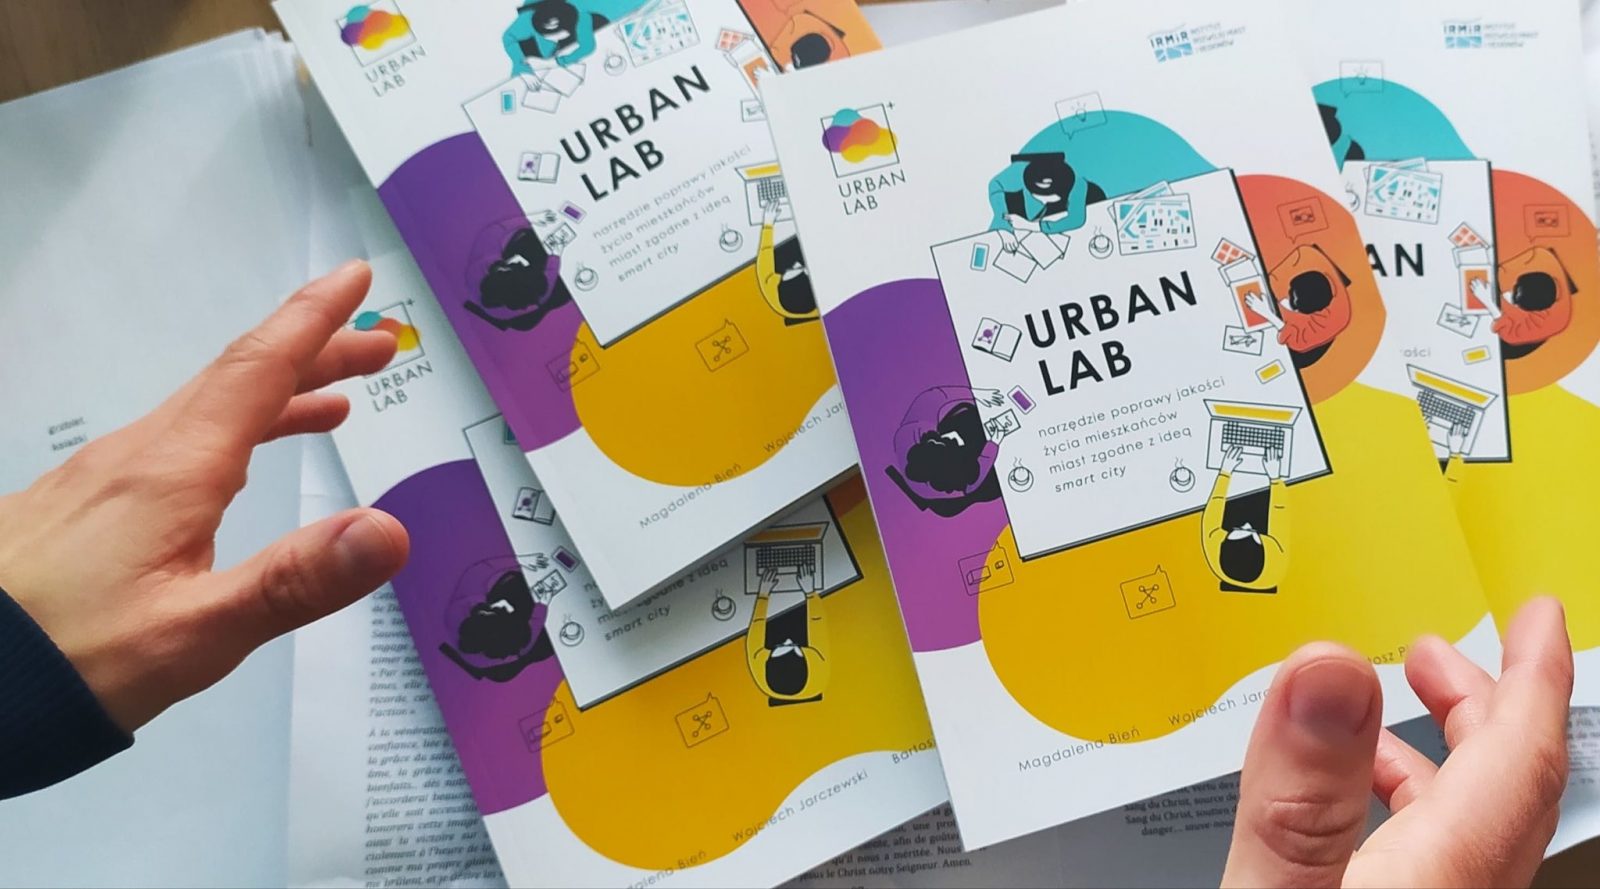 Okładka książki URBAN LAB narzędzie poprawy jakości życia mieszkańców miast zgodne z ideą smart city